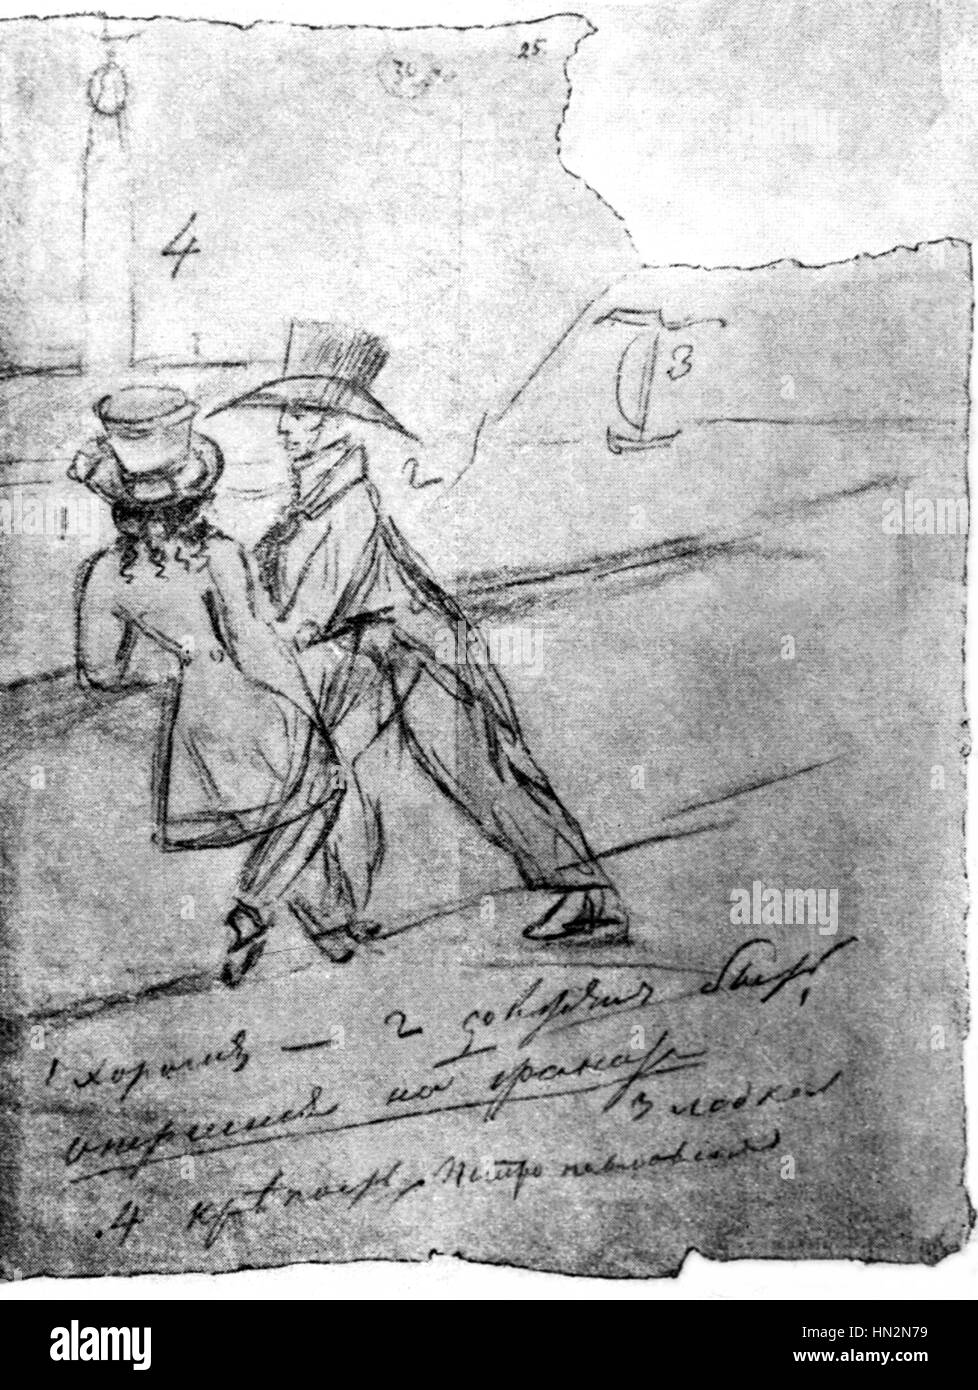 Dessin de Pouchkine pour le 1er chapitre de 'Eugene Oneguin" (dessin envoyé à son frère) 19e siècle Russie Banque D'Images